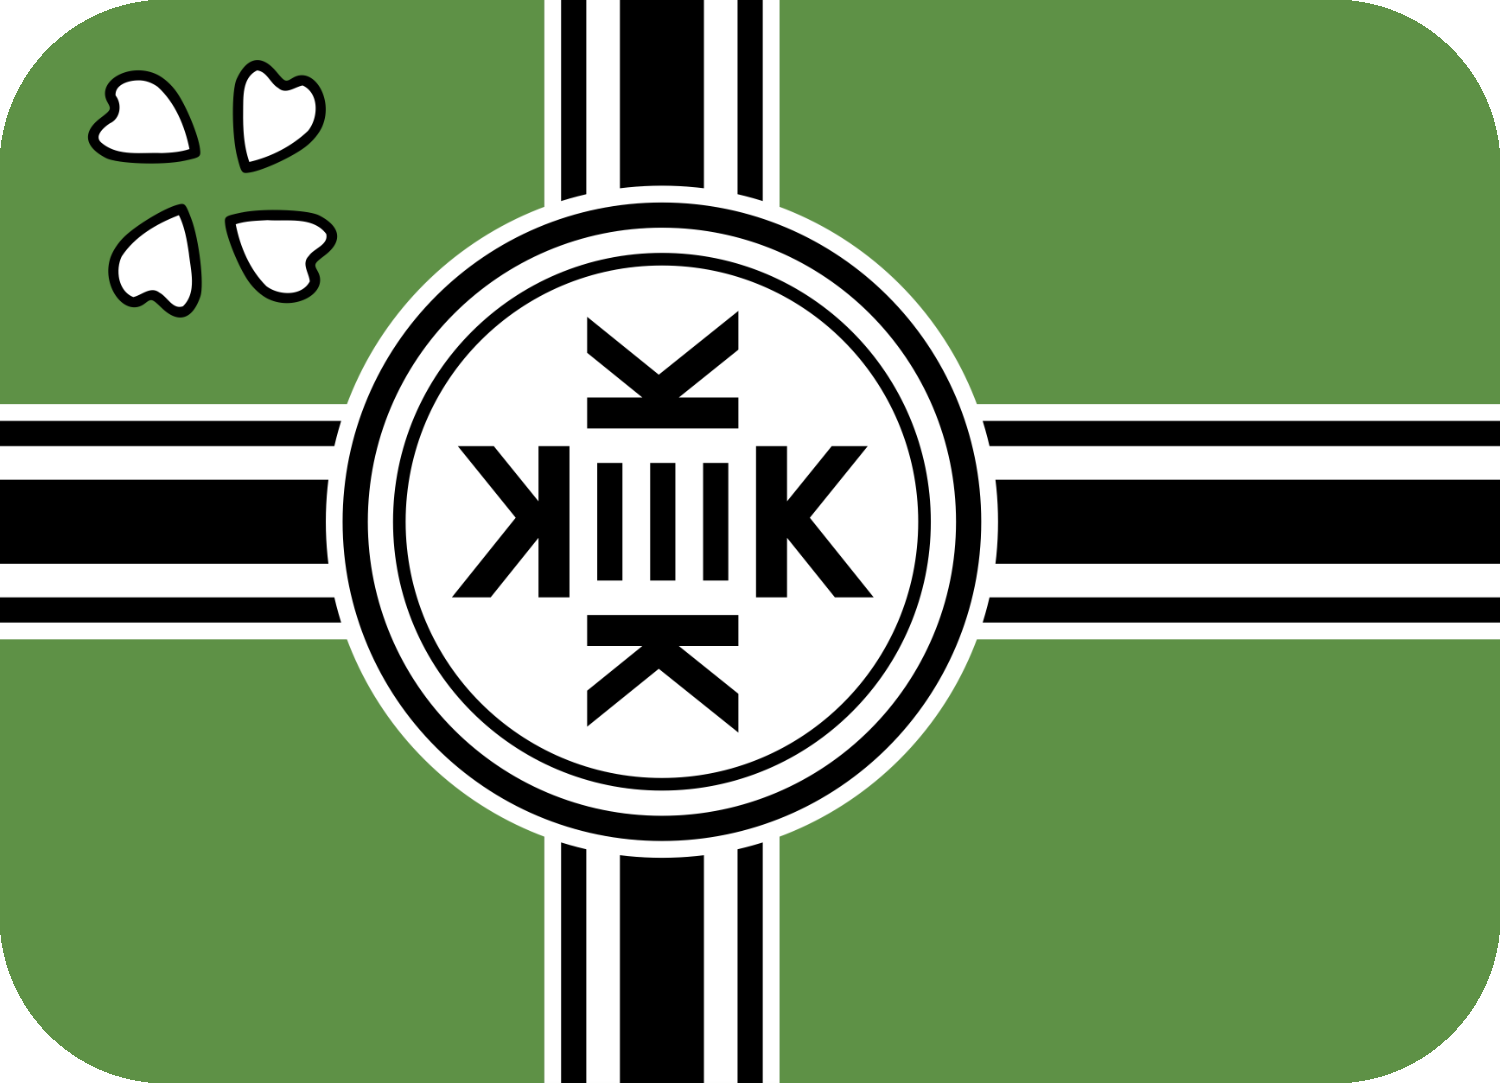 flag_kek